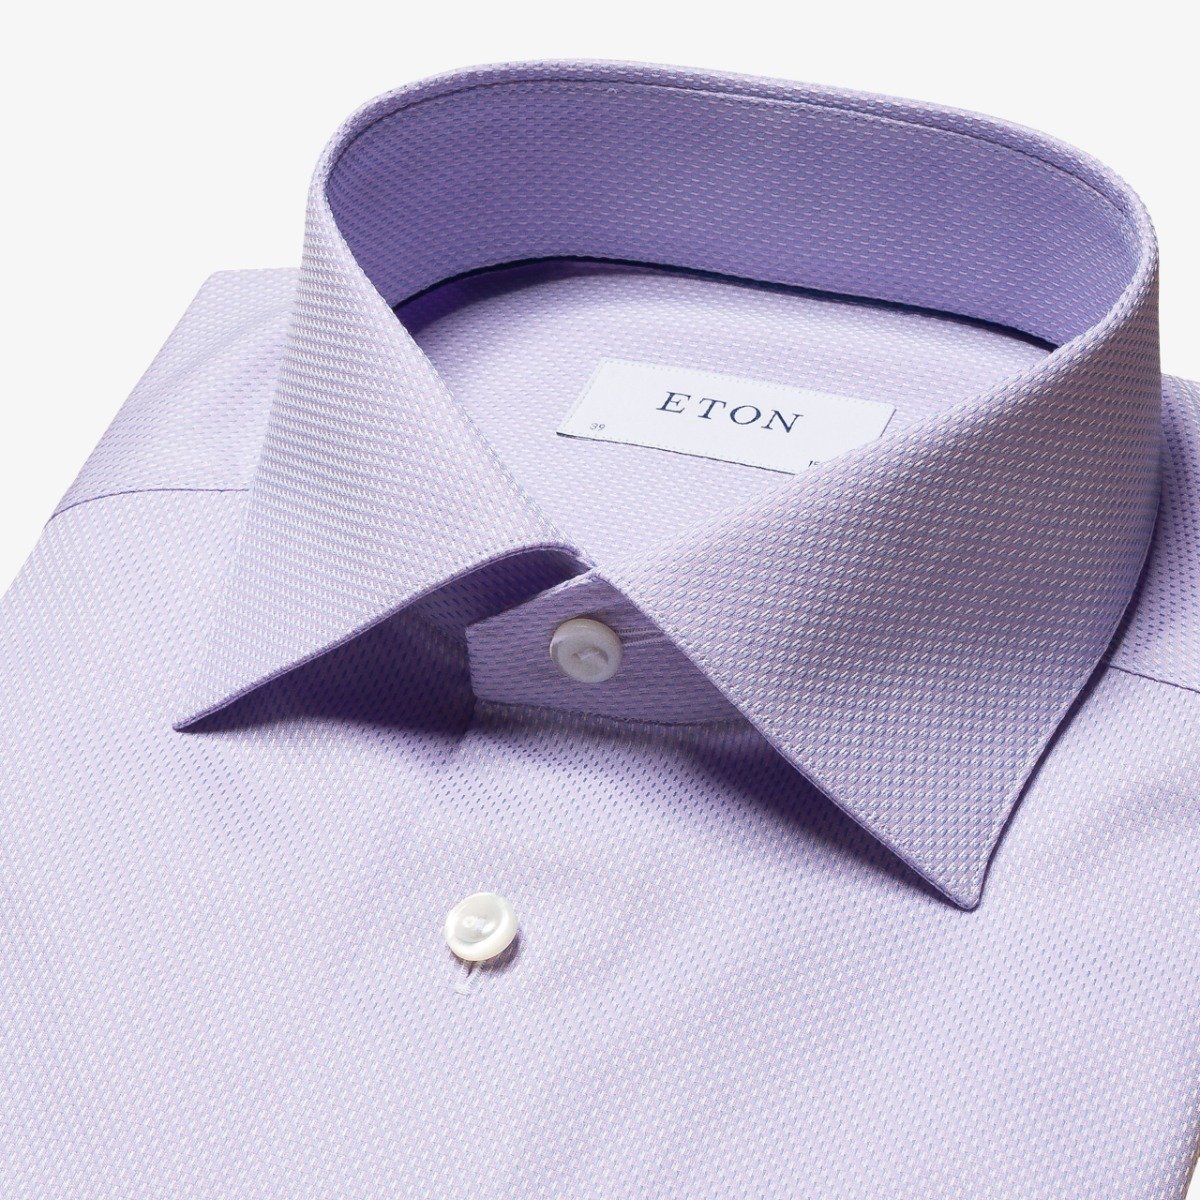 Eton purple slim fit fine pique men's dress shirt